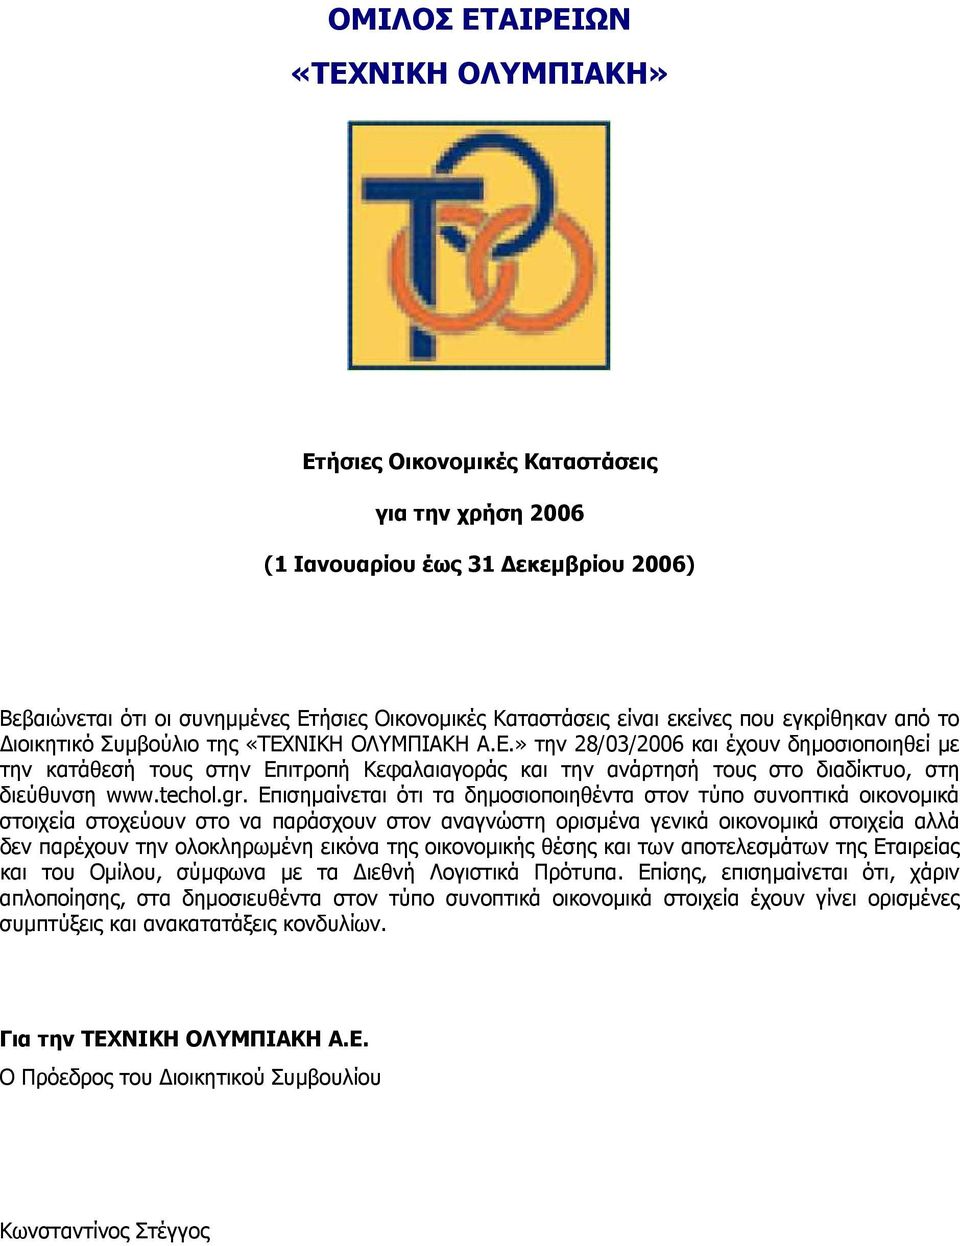 ΝΙΚΗ ΟΛΥΜΠΙΑΚΗ Α.Ε.» την 28/03/2006 και έχουν δηµοσιοποιηθεί µε την κατάθεσή τους στην Επιτροπή Kεφαλαιαγοράς και την ανάρτησή τους στο διαδίκτυο, στη διεύθυνση www.techol.gr.